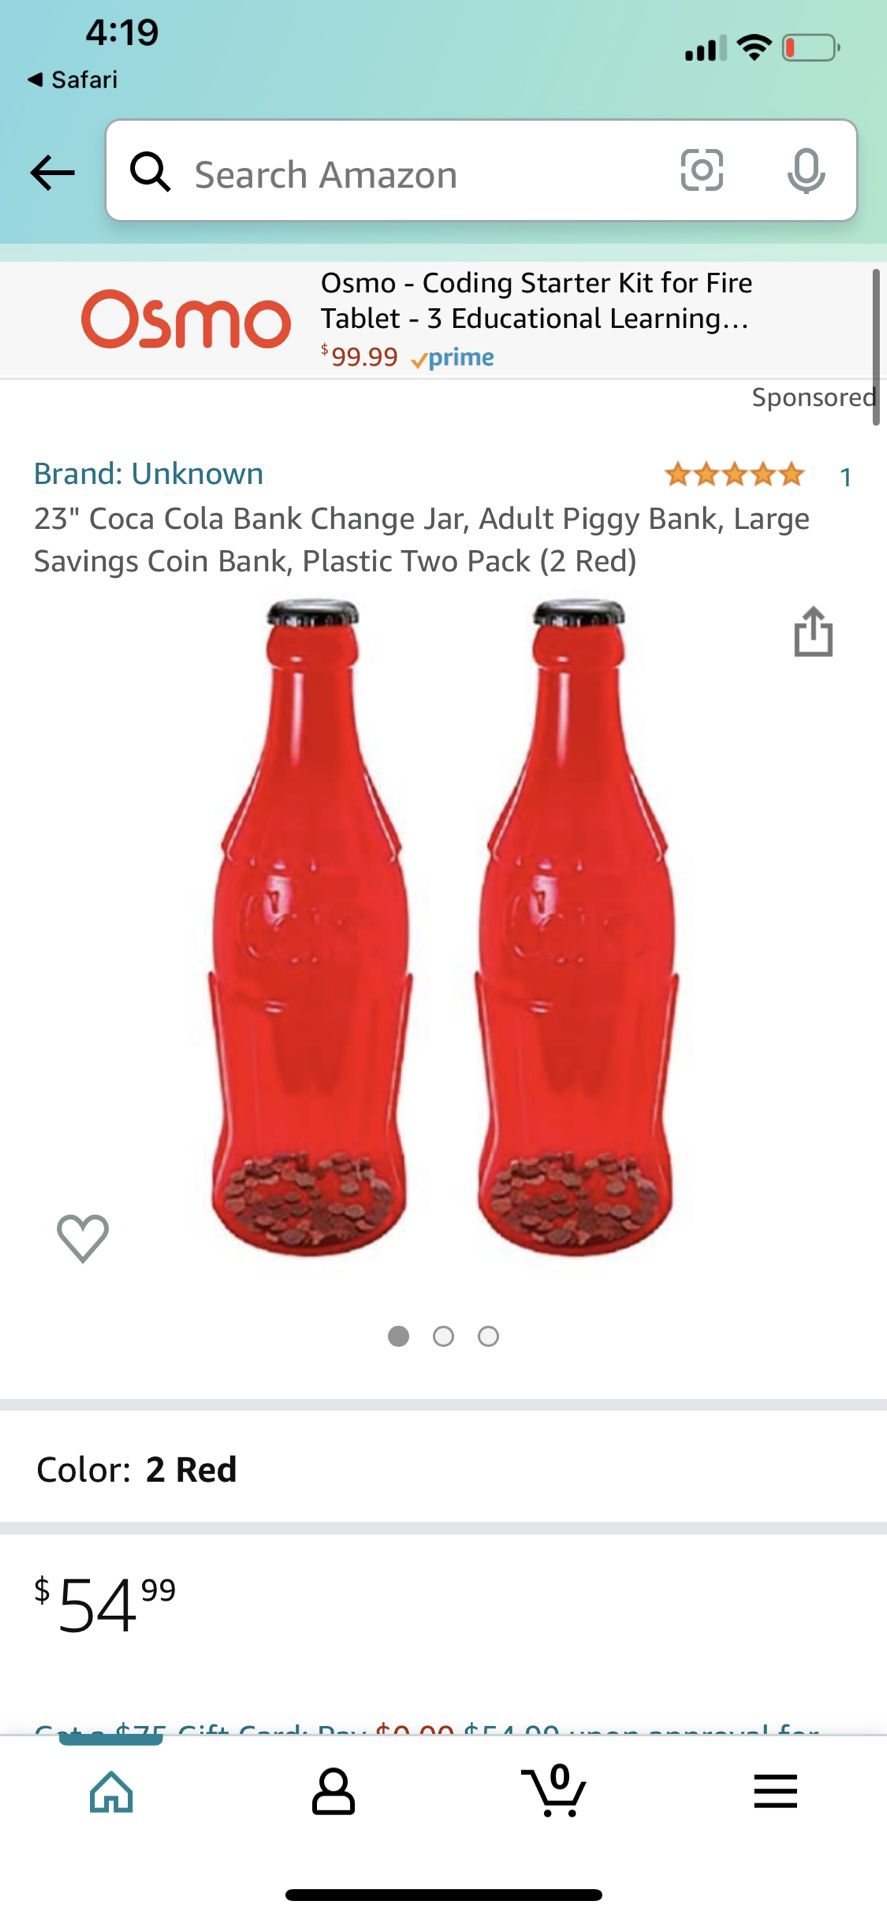 Coke-Cola Coin Bank (2) 